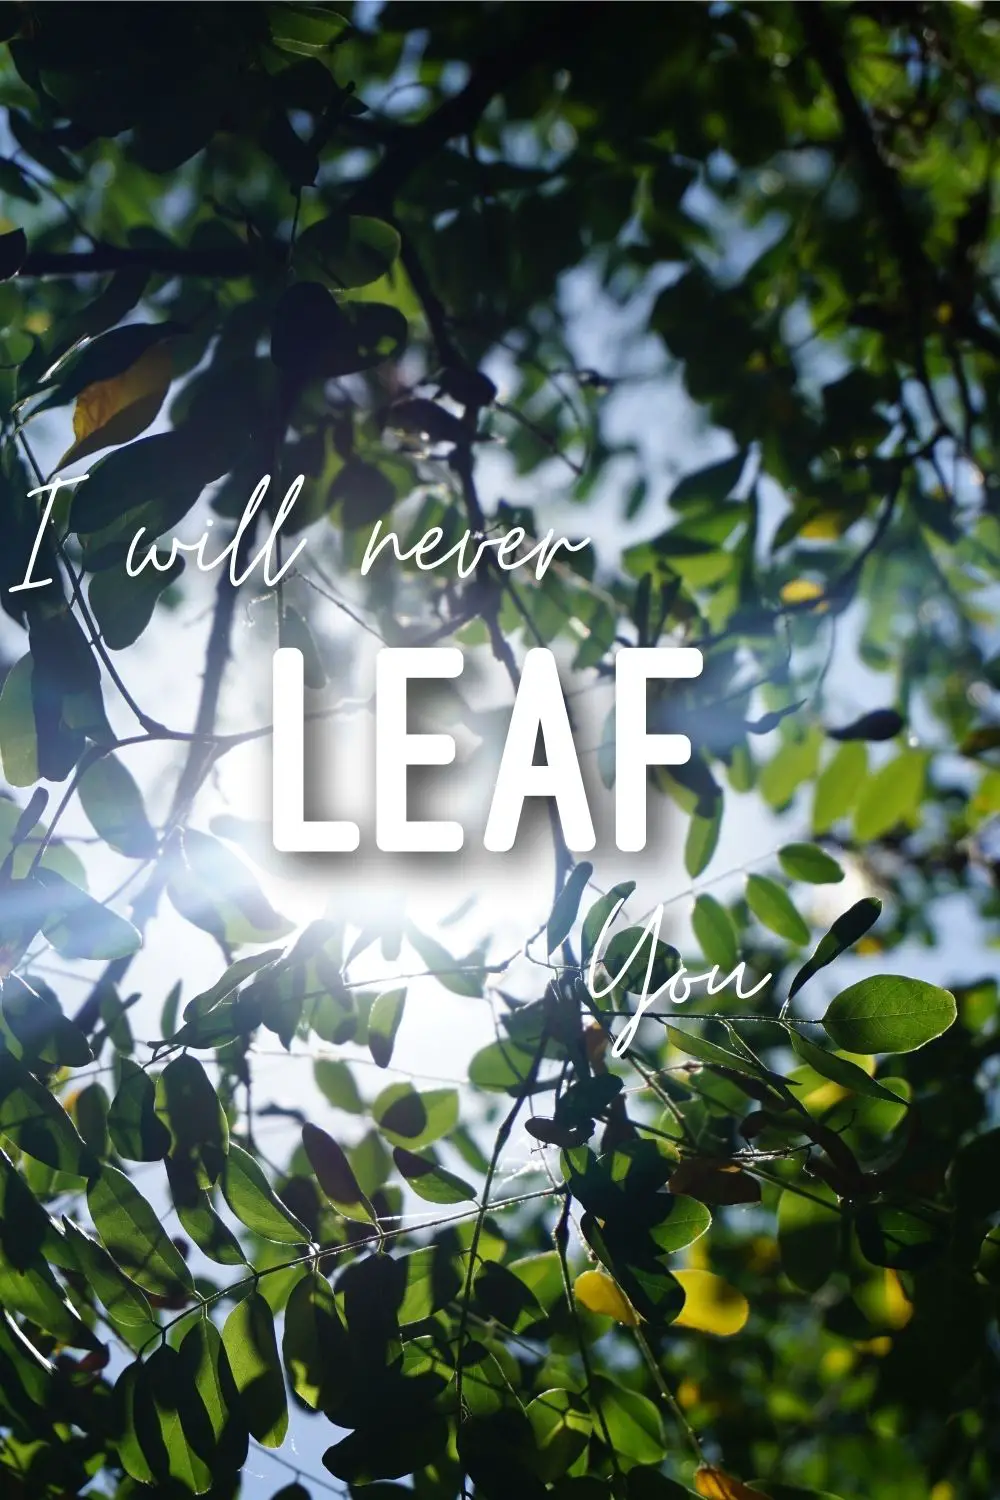 I'll never leaf you